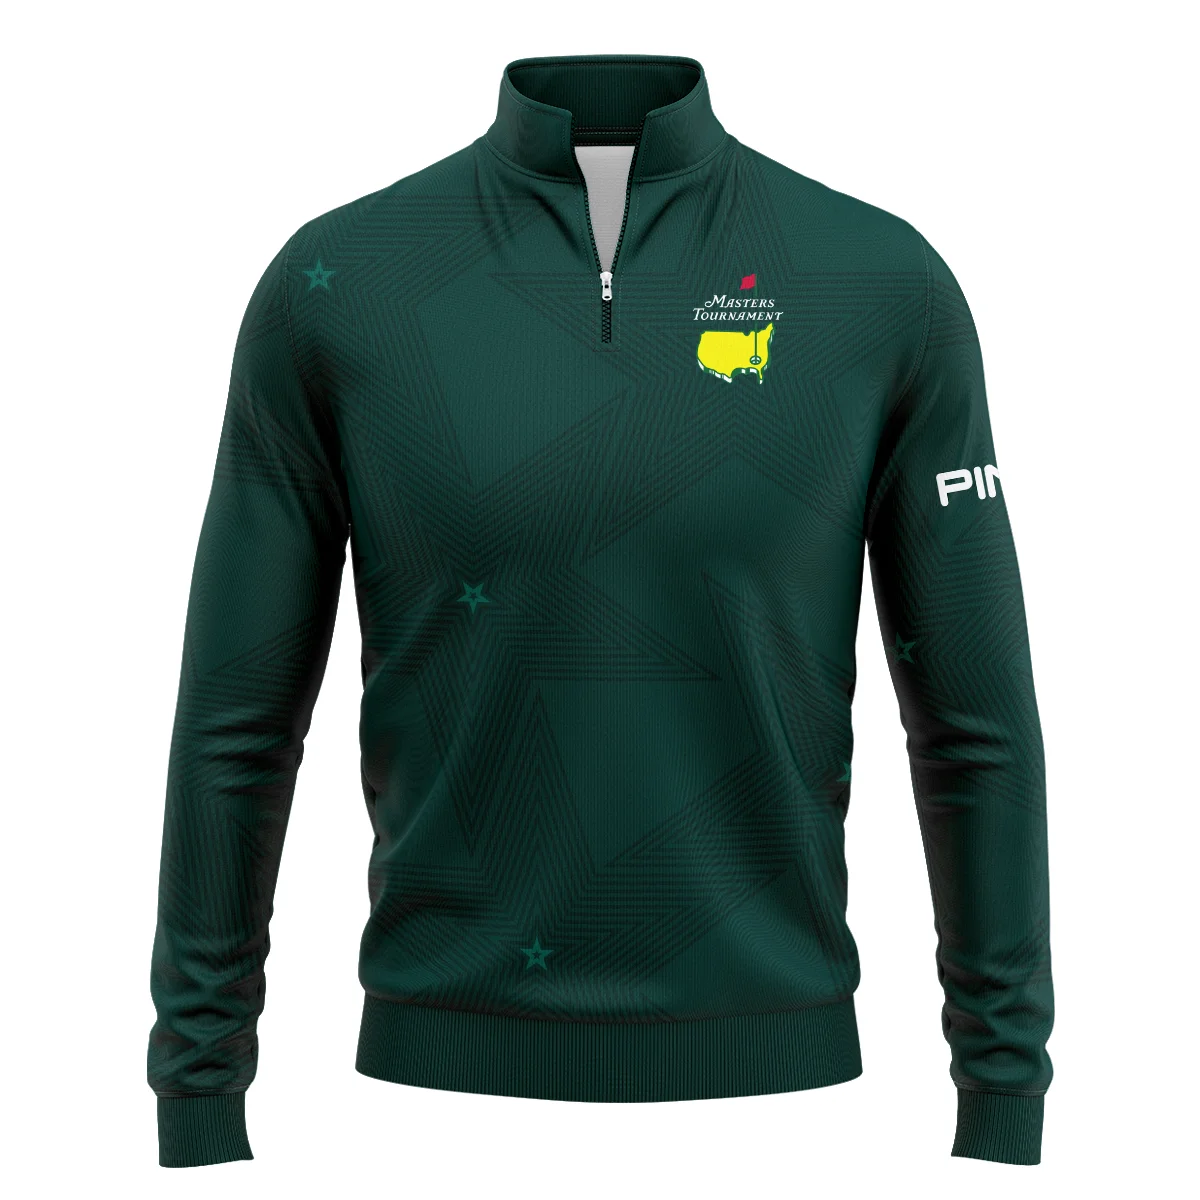 Stars Dark Green Golf Masters Tournament Ping Unisex Sweatshirt Style Classic Sweatshirt